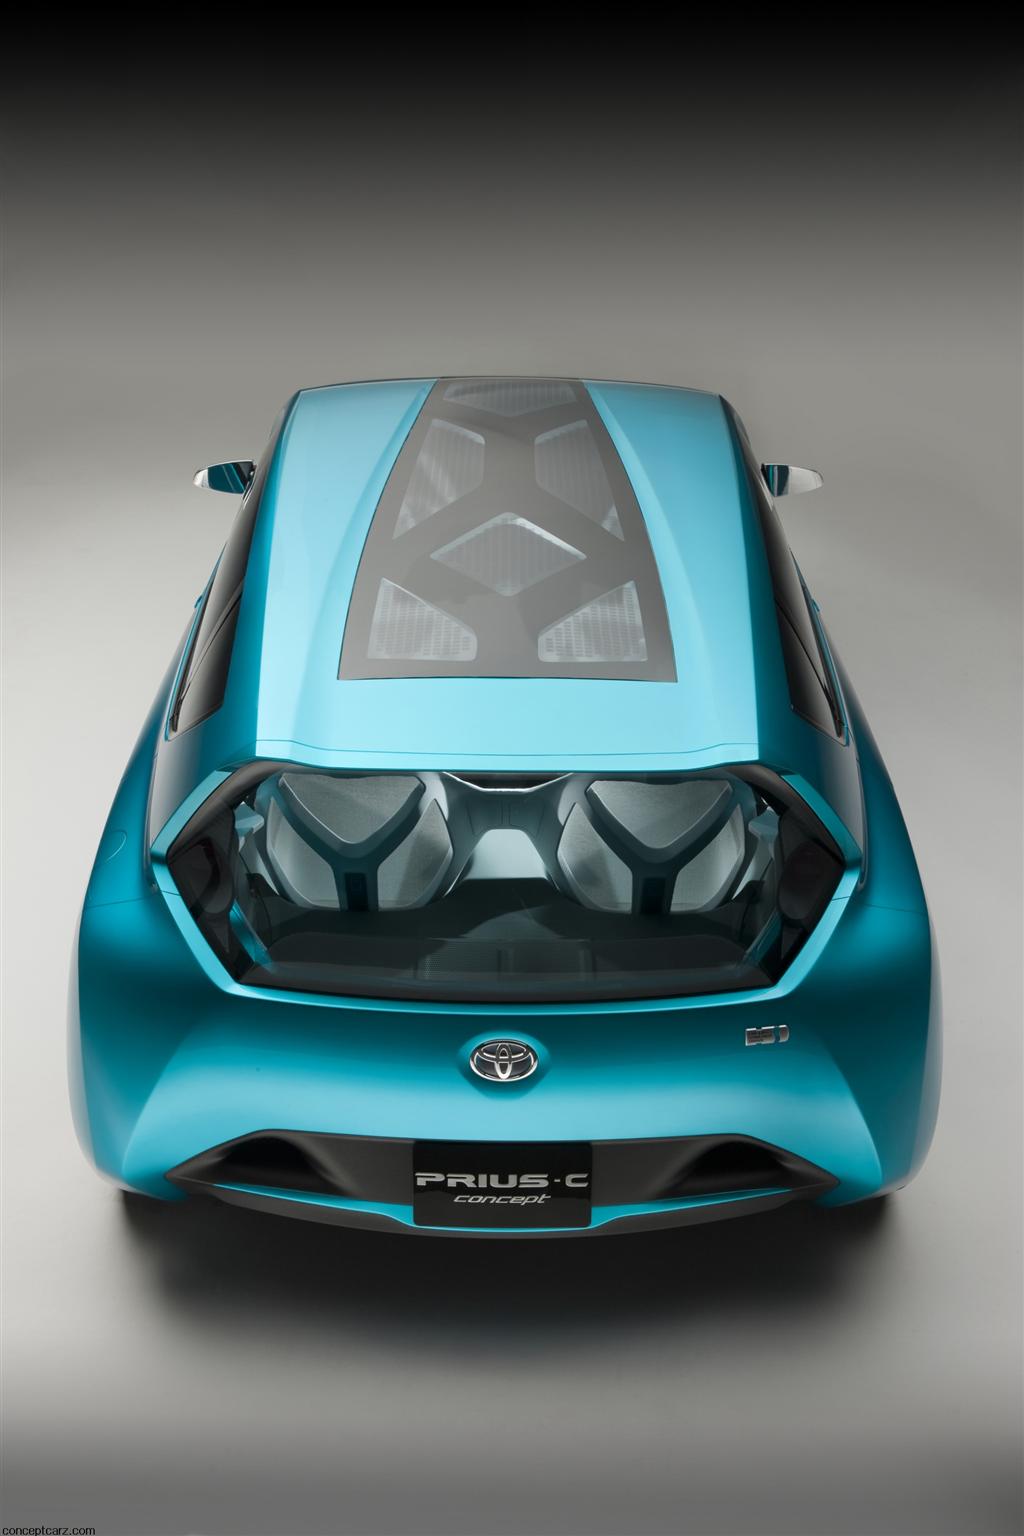 2011 Toyota Prius c Concept